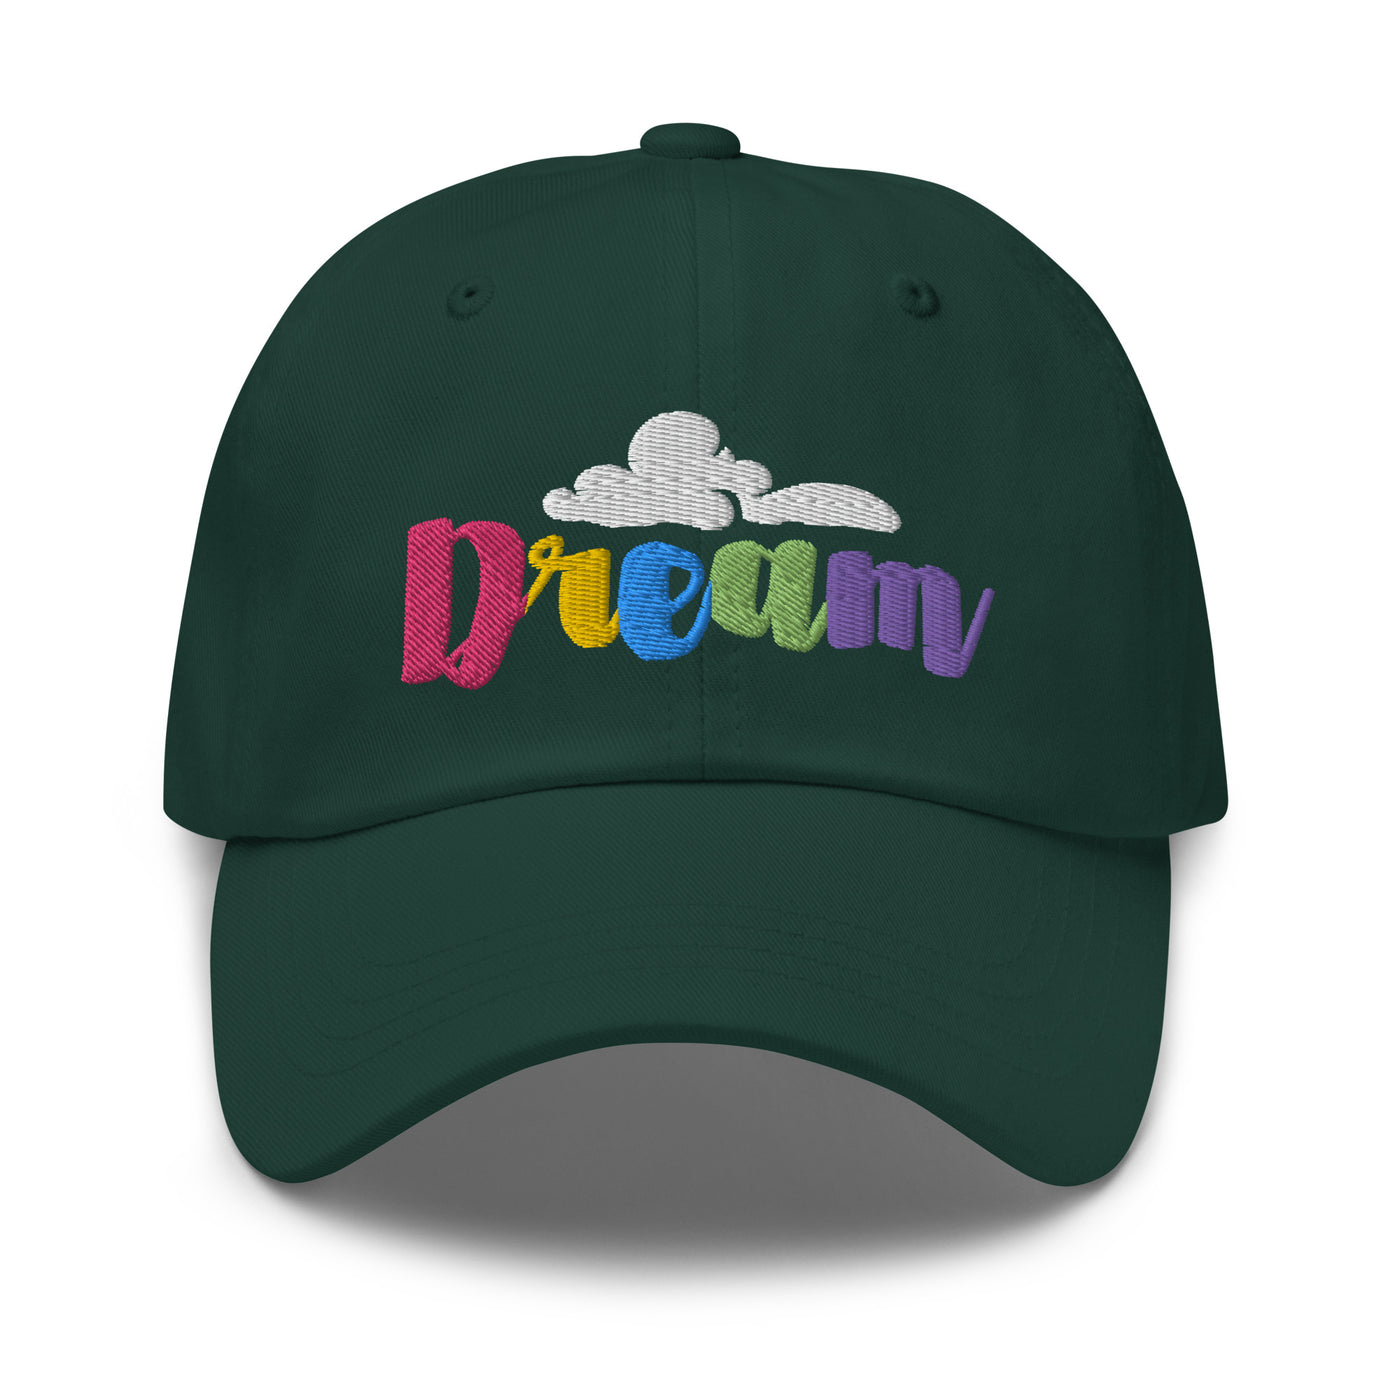 Dream - Classic Dad Hat